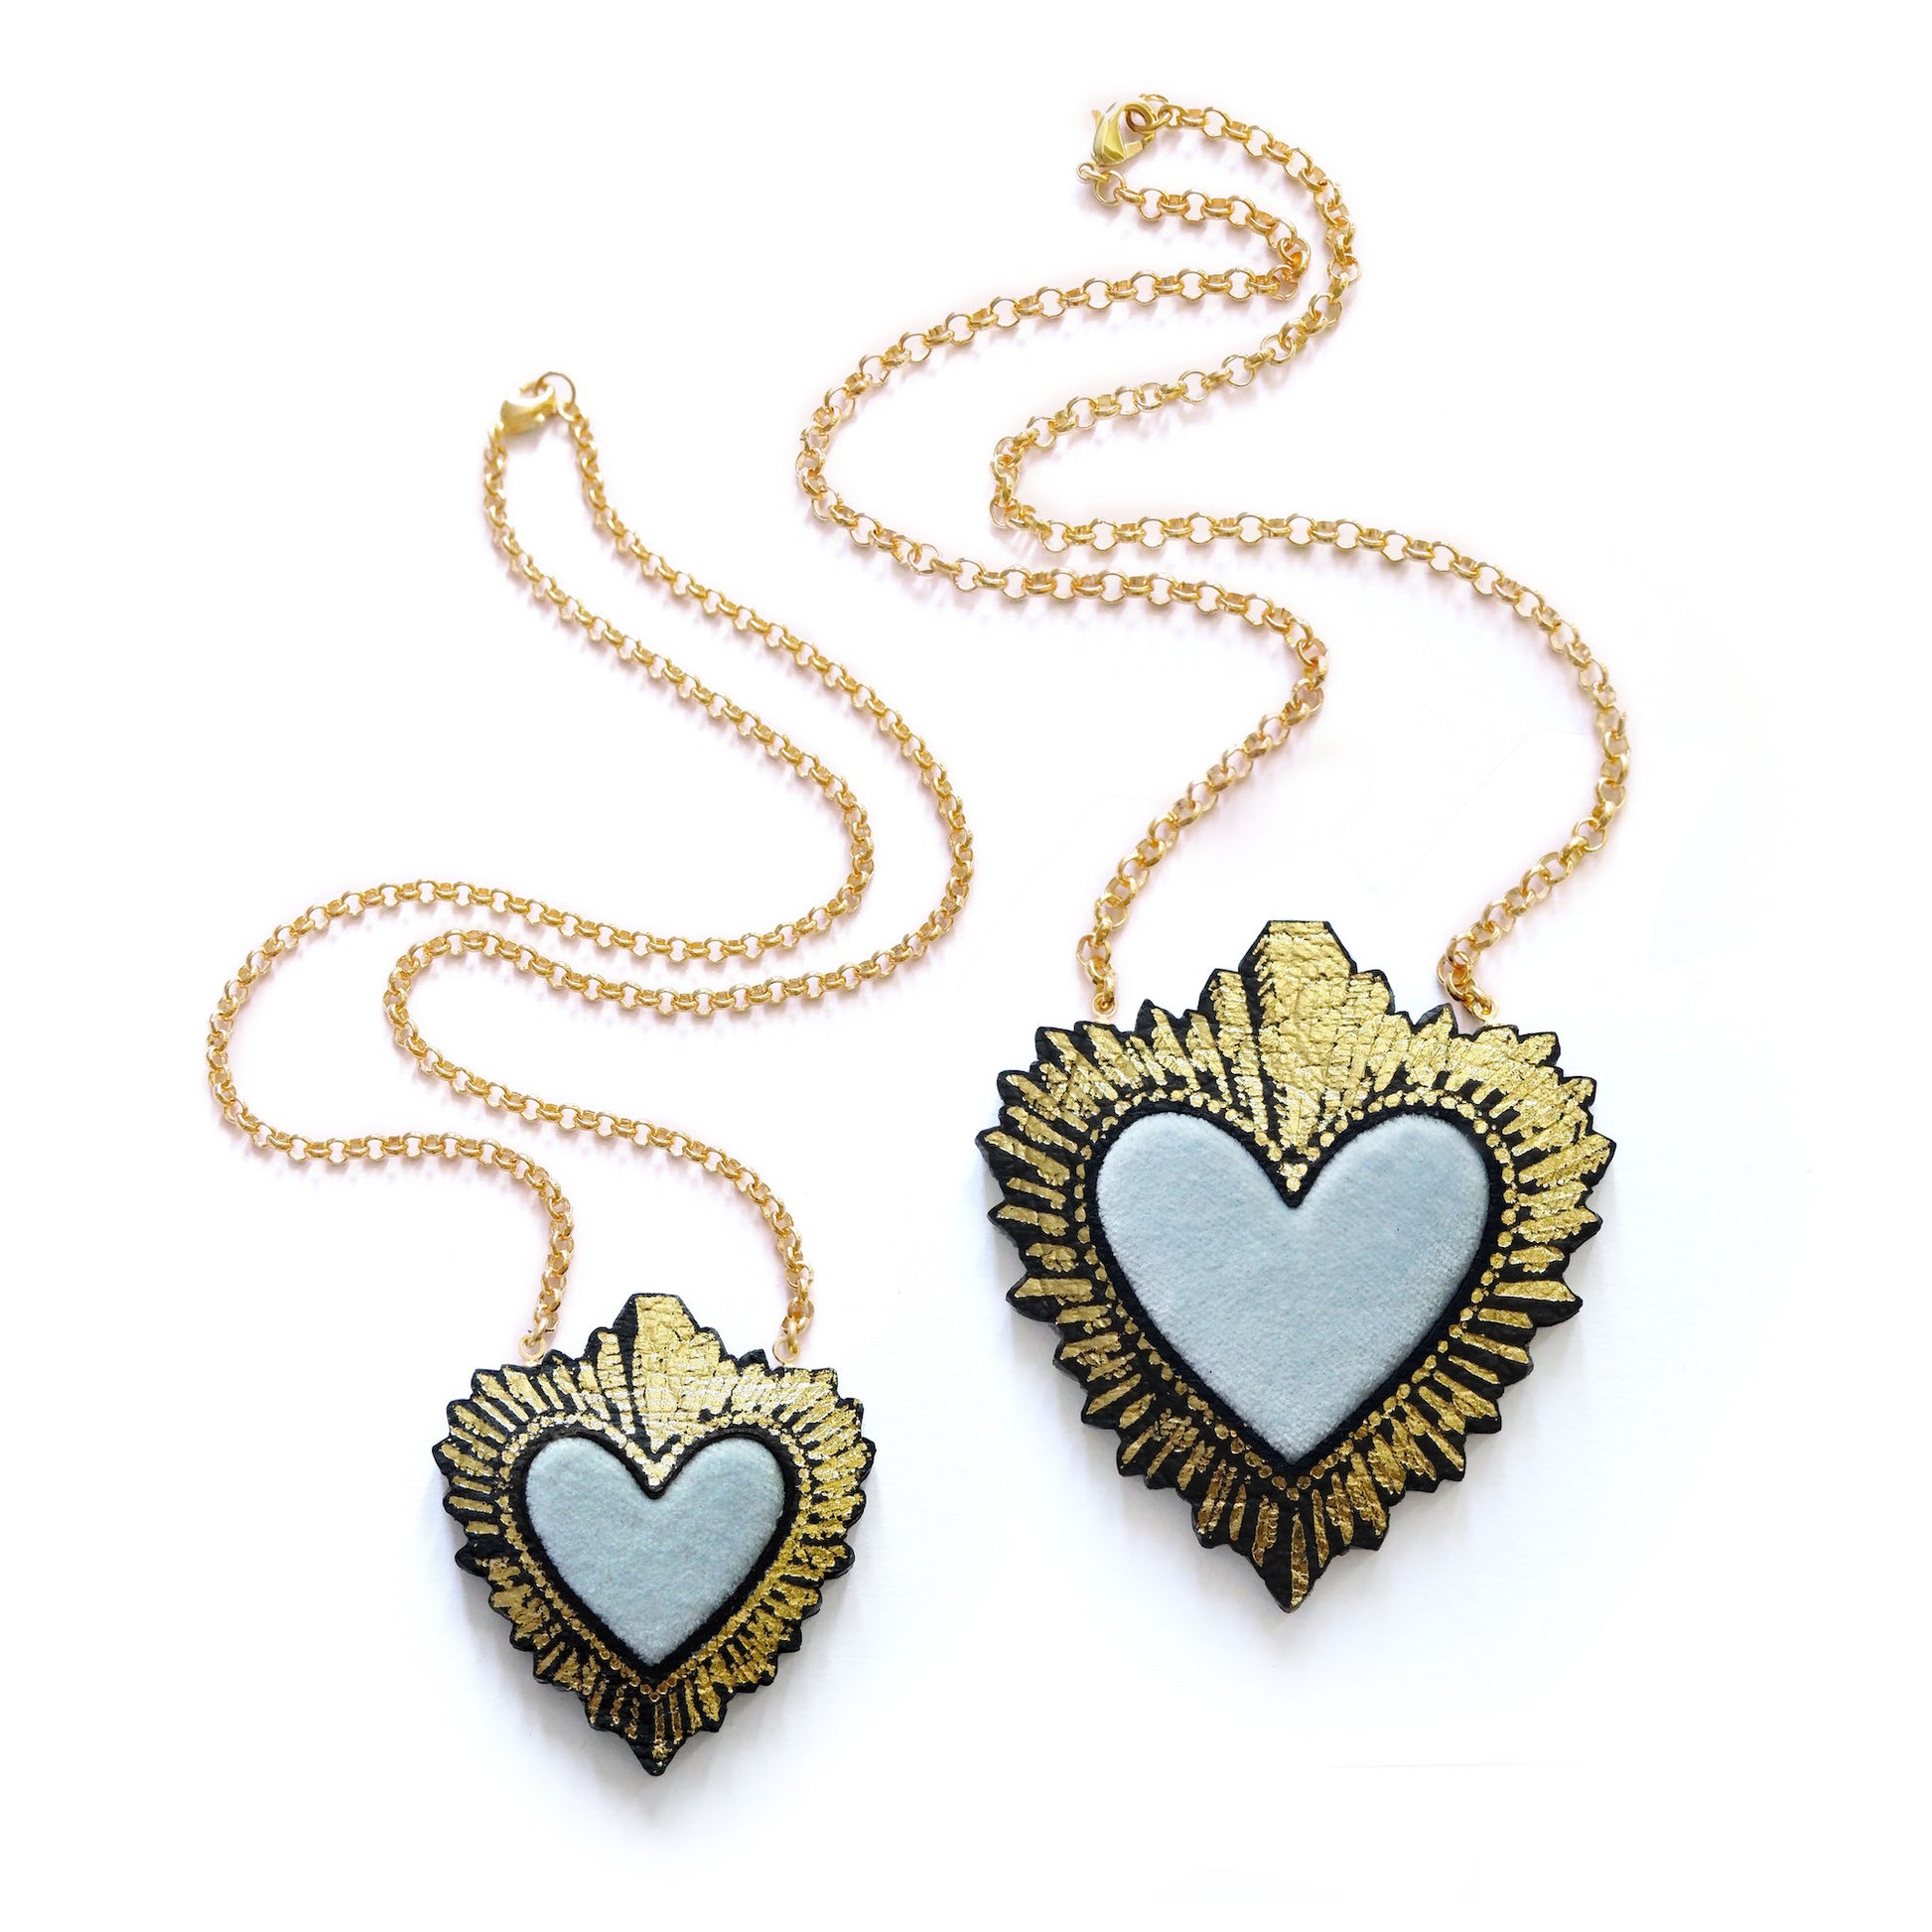 two sizes of pastel blue velvet sacred heart pendant necklace, on gold belcher chain